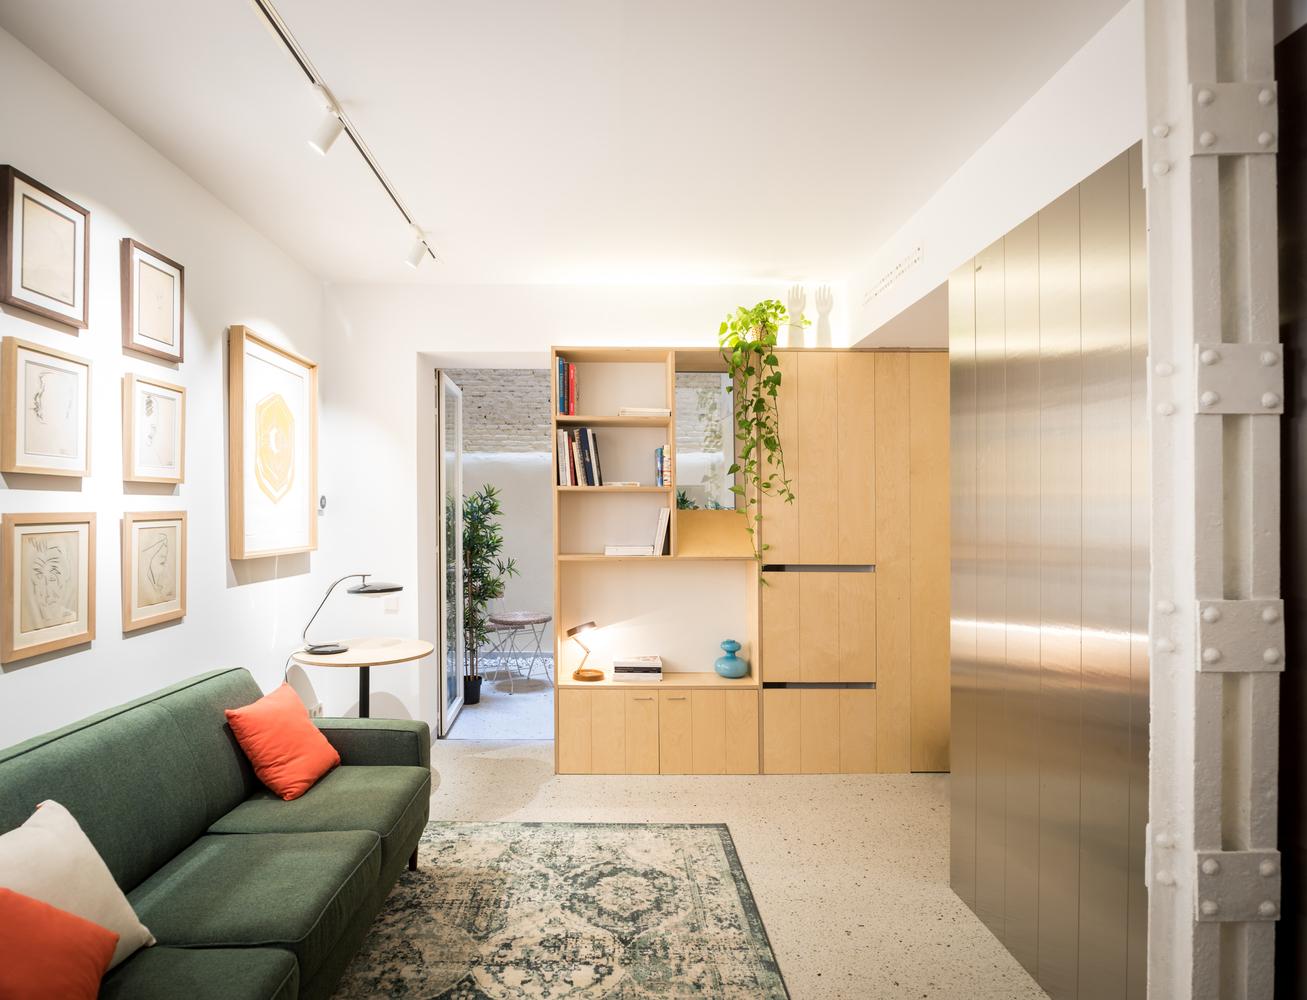 484呎實用家居設計術 分明打造出2個生活空間